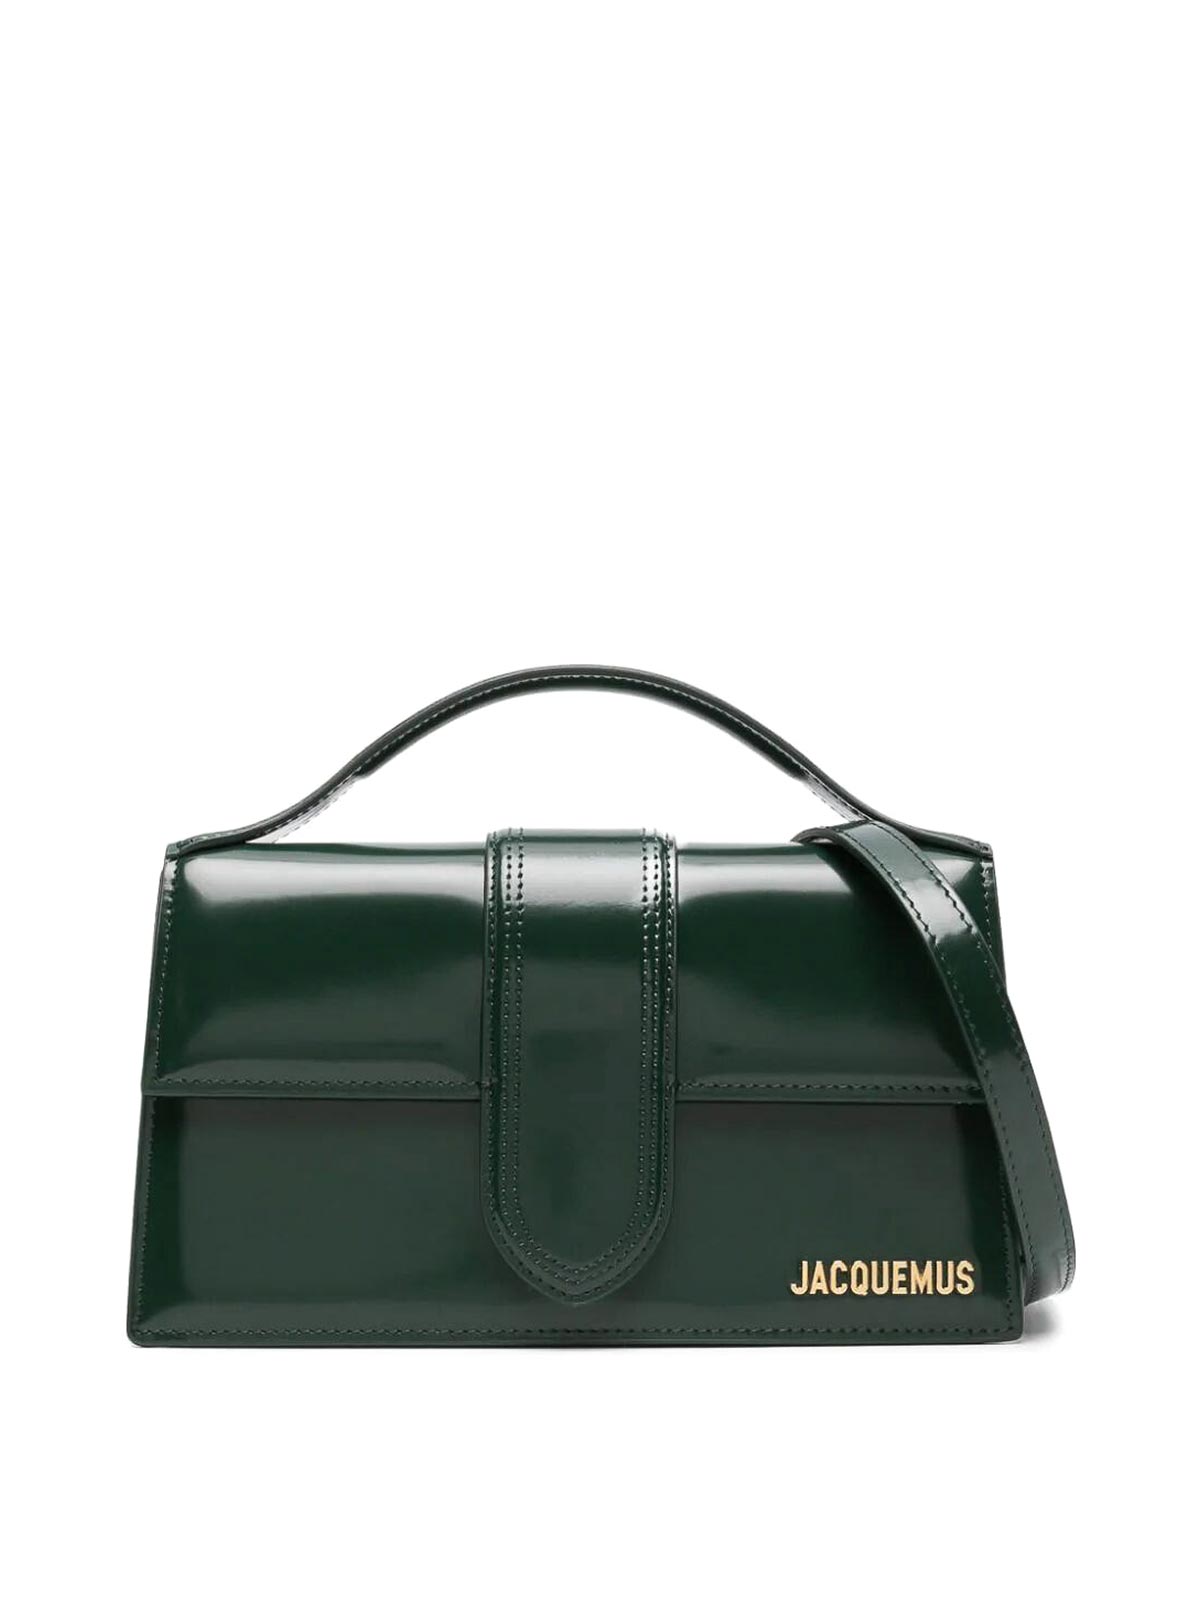 Jacquemus Le Bambino Bag In Green